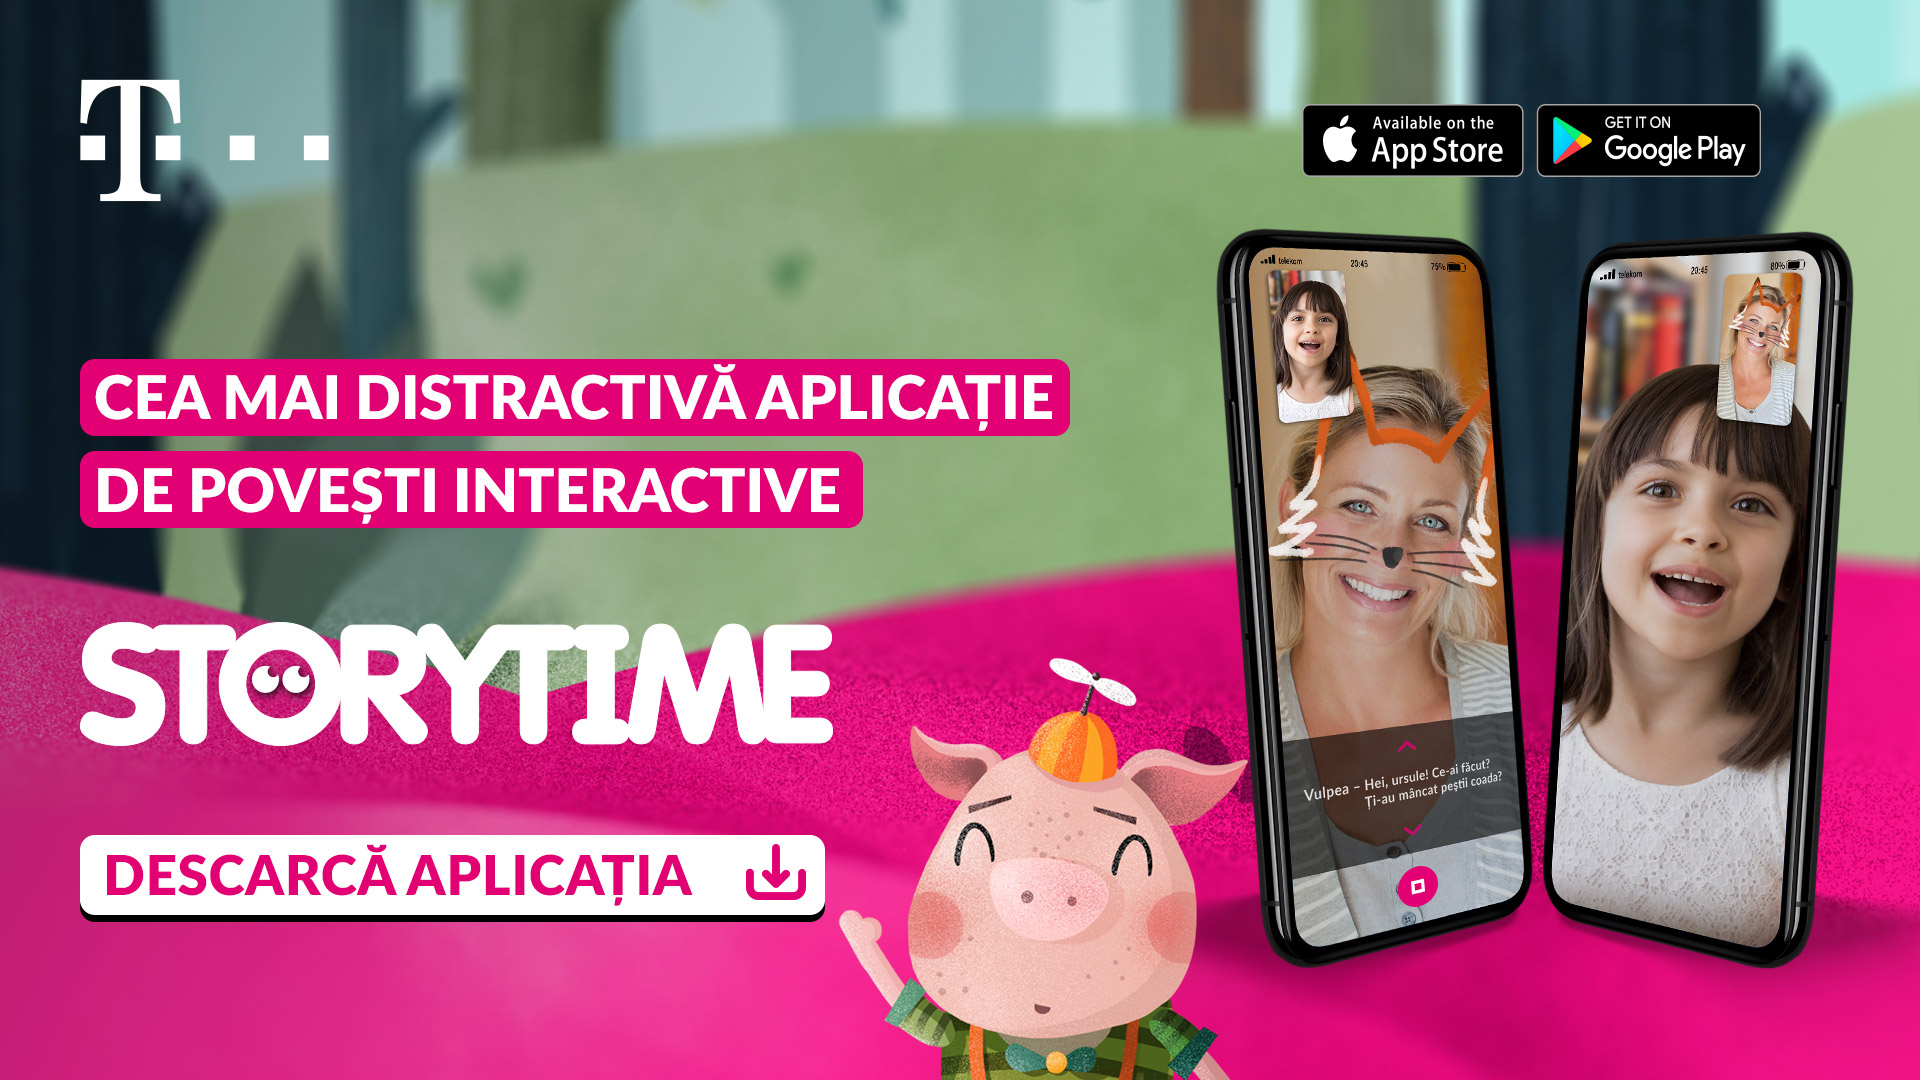 Storytime – O aplicație 100% made in RO vrea să ajute relația părinți-copii, chiar și la mii de kilometri distanță